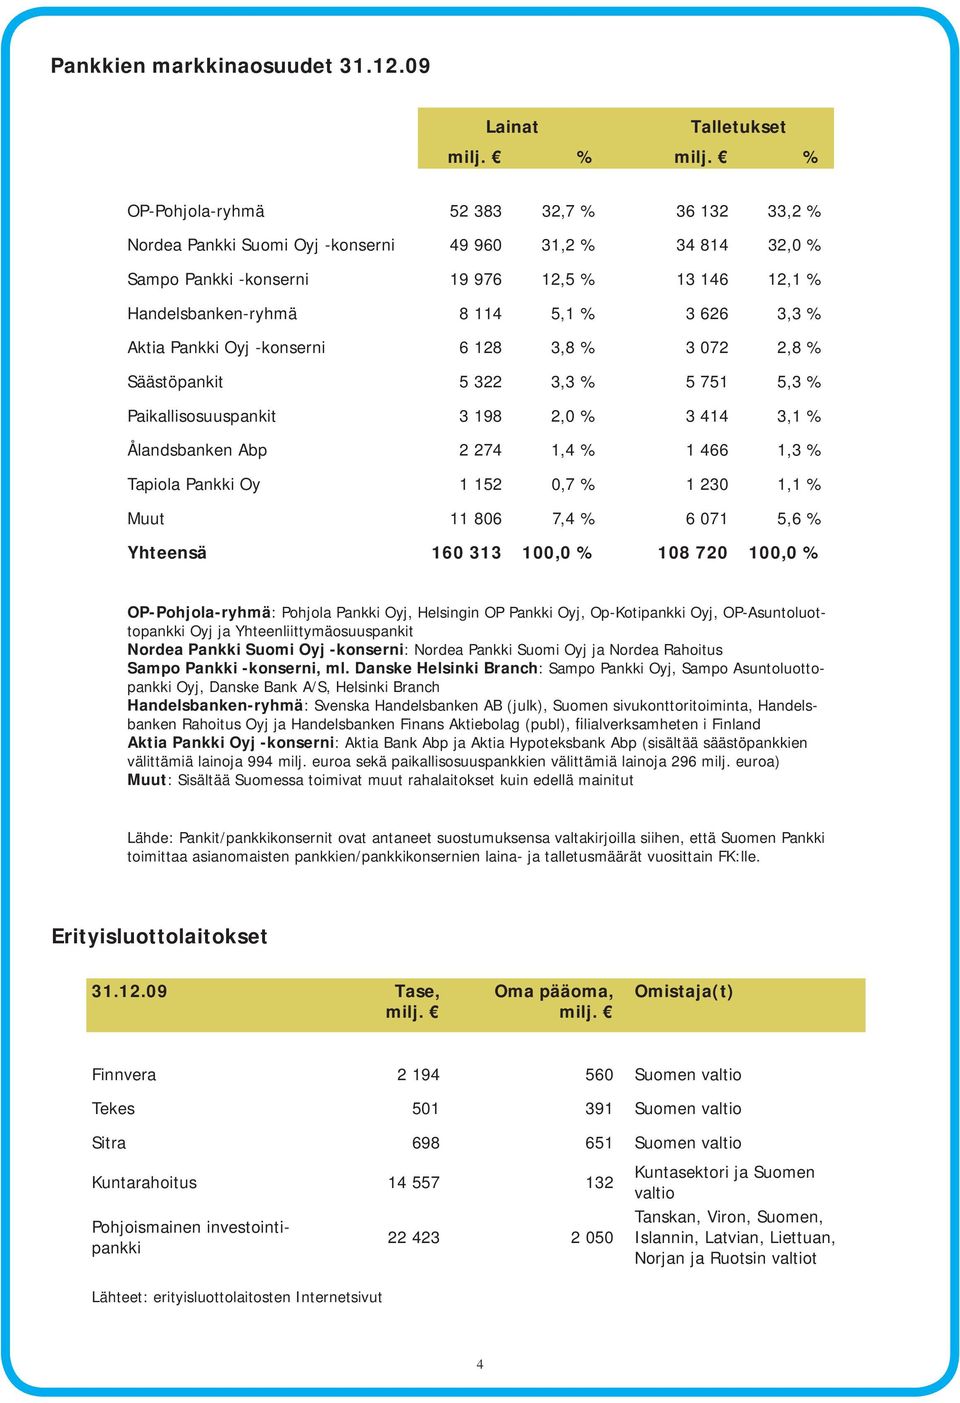 Handelsbanken-ryhmä 8 114 5,1 % 3 626 3,3 % Aktia Pankki Oyj -konserni 6 128 3,8 % 3 072 2,8 % Säästöpankit 5 322 3,3 % 5 751 5,3 % Paikallisosuuspankit 3 198 2,0 % 3 414 3,1 % Ålandsbanken Abp 2 274